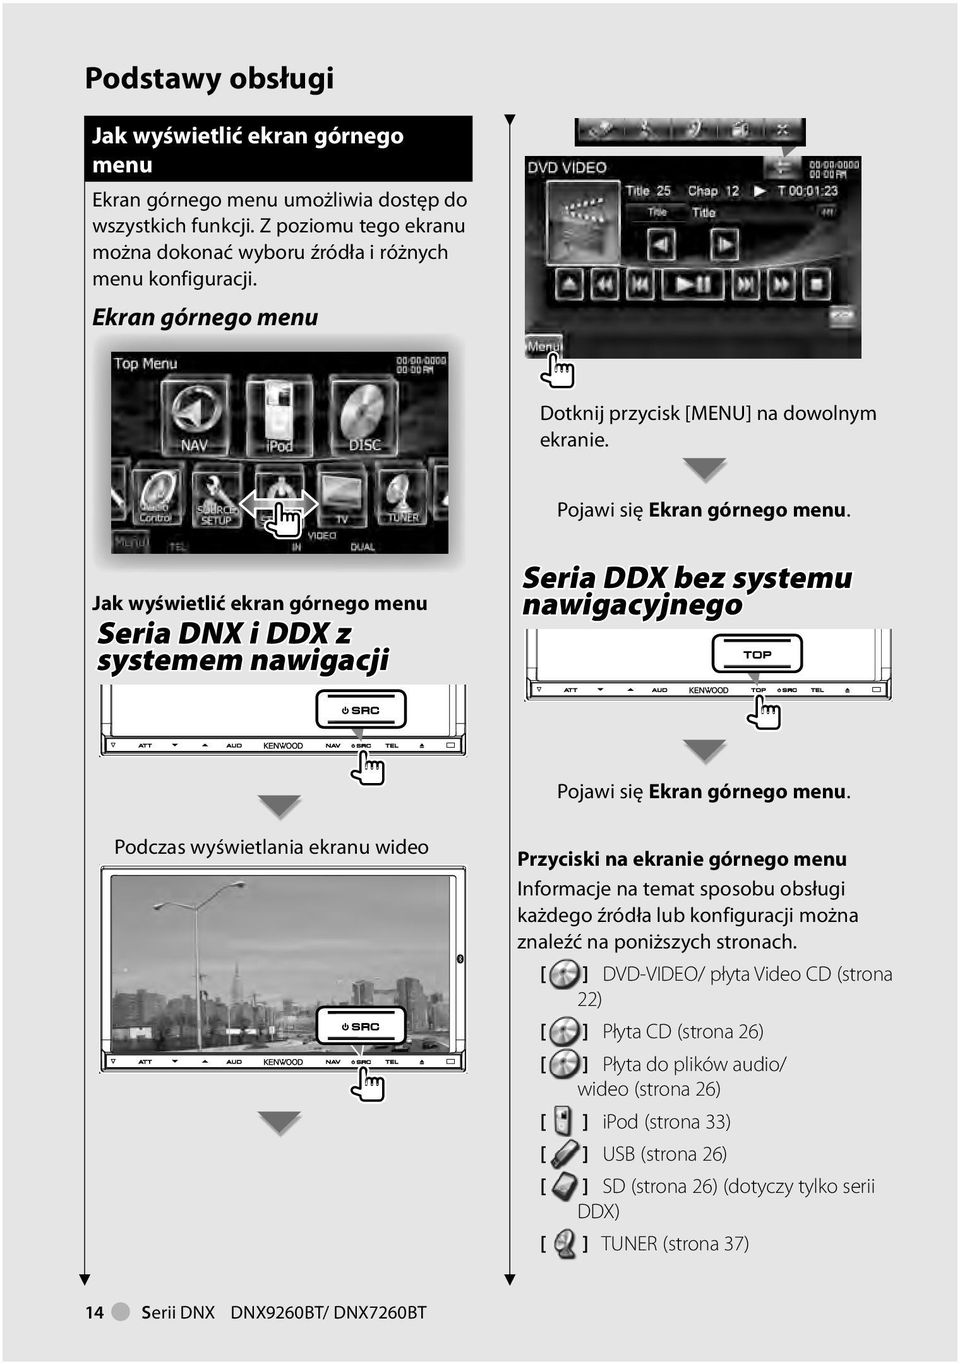 Jak wyświetlić ekran górnego menu Seria DNX i DDX z systemem nawigacji Seria DDX bez systemu nawigacyjnego Pojawi się Ekran górnego menu.